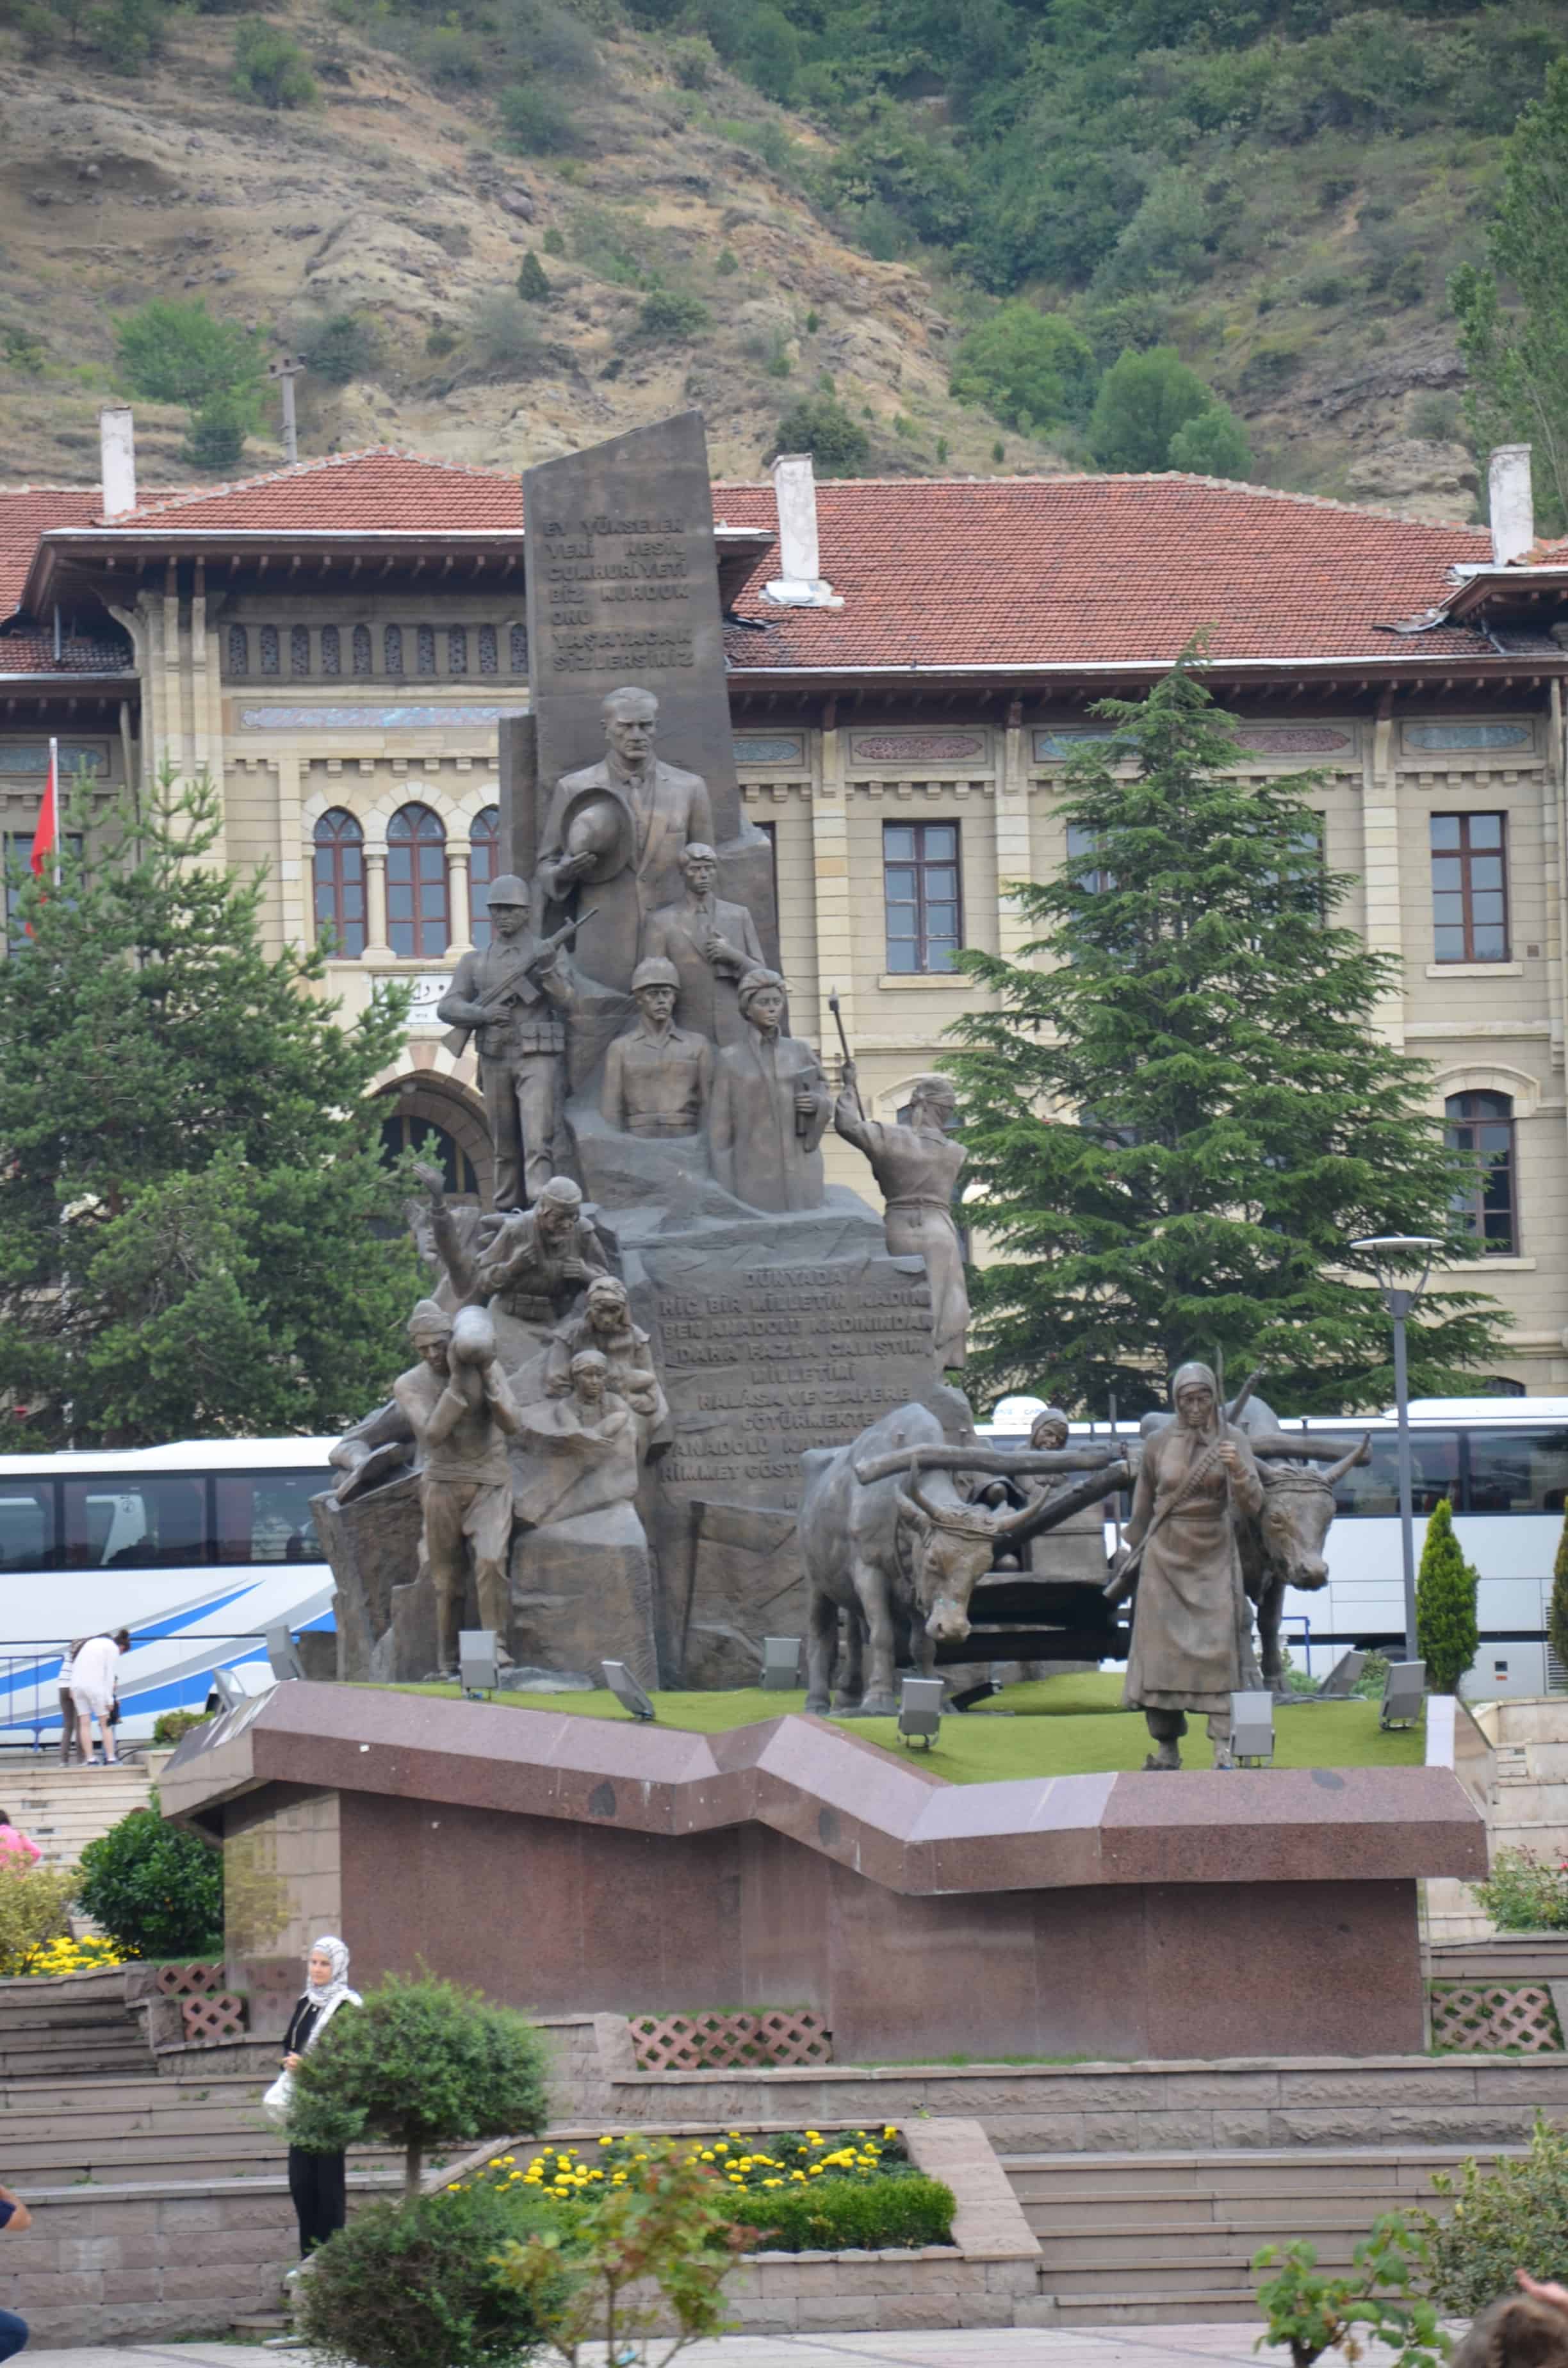 Atatürk monument at Cumhuriyet Meydanı in Kastamonu, Turkey